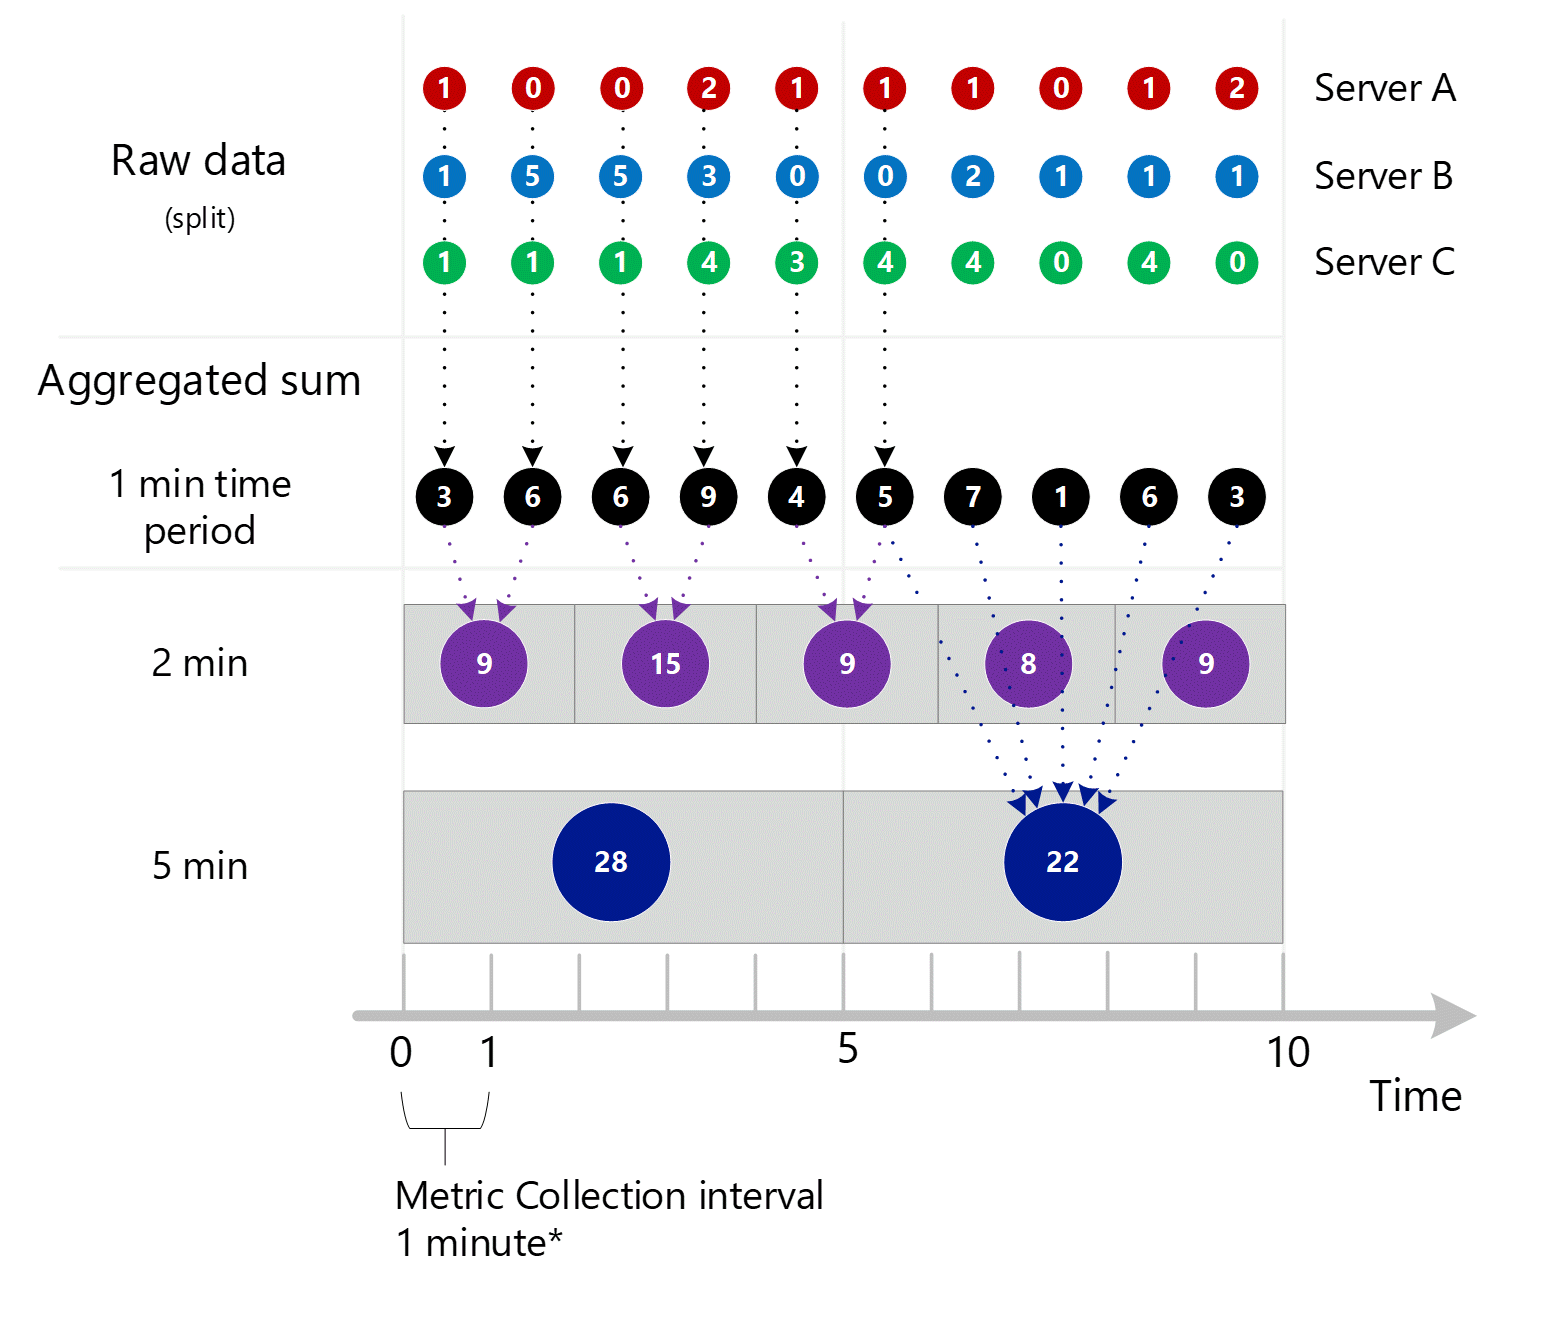 Skärmbild som visar konsolidering av tidigare 3 skärmbilder. Flera aggregerade poster på 1 minut över dimensionen av servern aggregerade i intervallen 1 minut, 2 minuter och 5 minuter. Server A, B och C visas individuellt